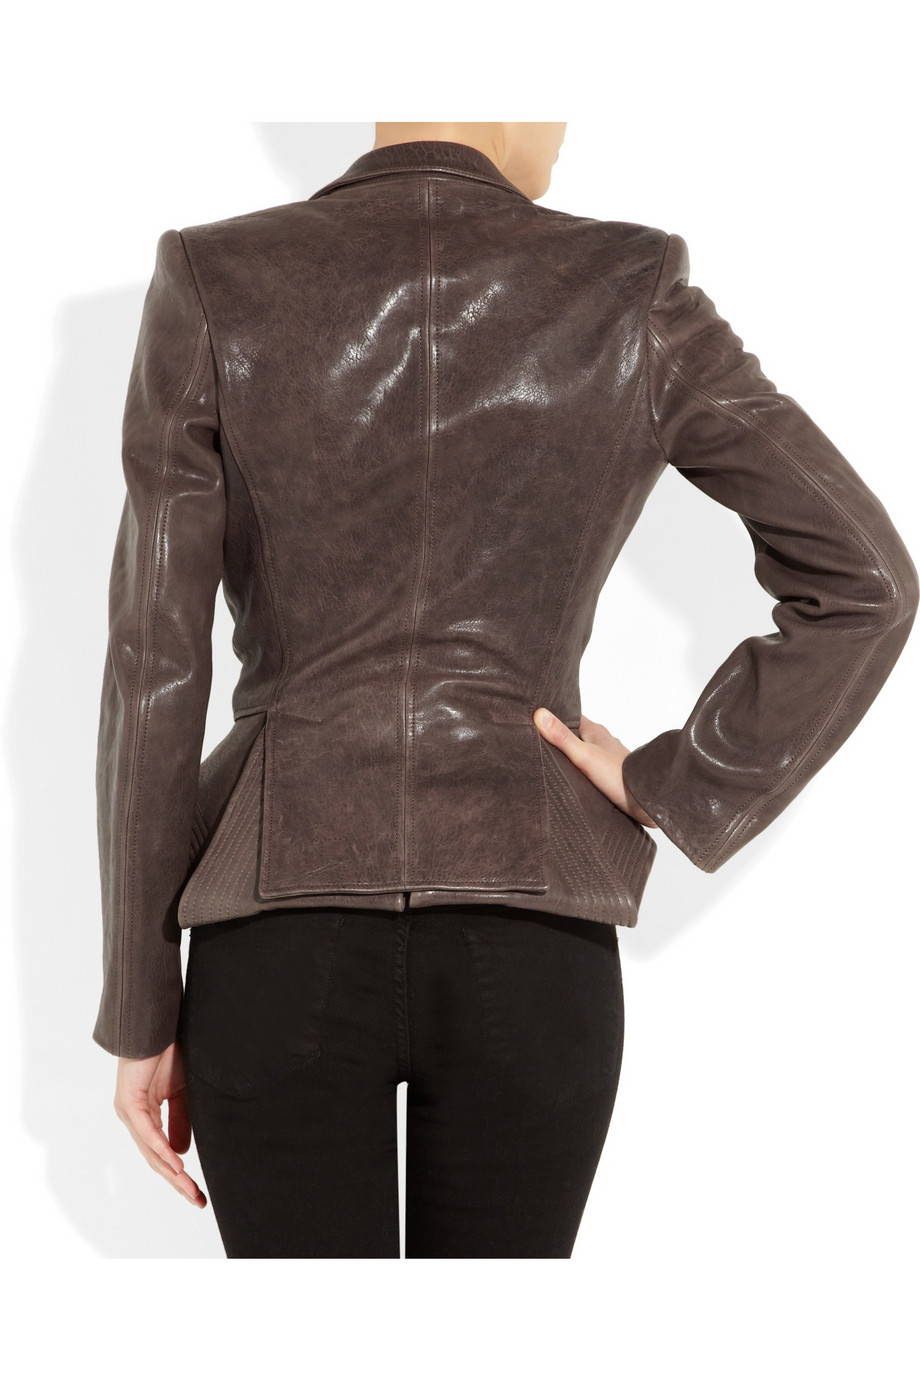 Haider Ackermann Leather Peplum Jacket in Brown - Lyst